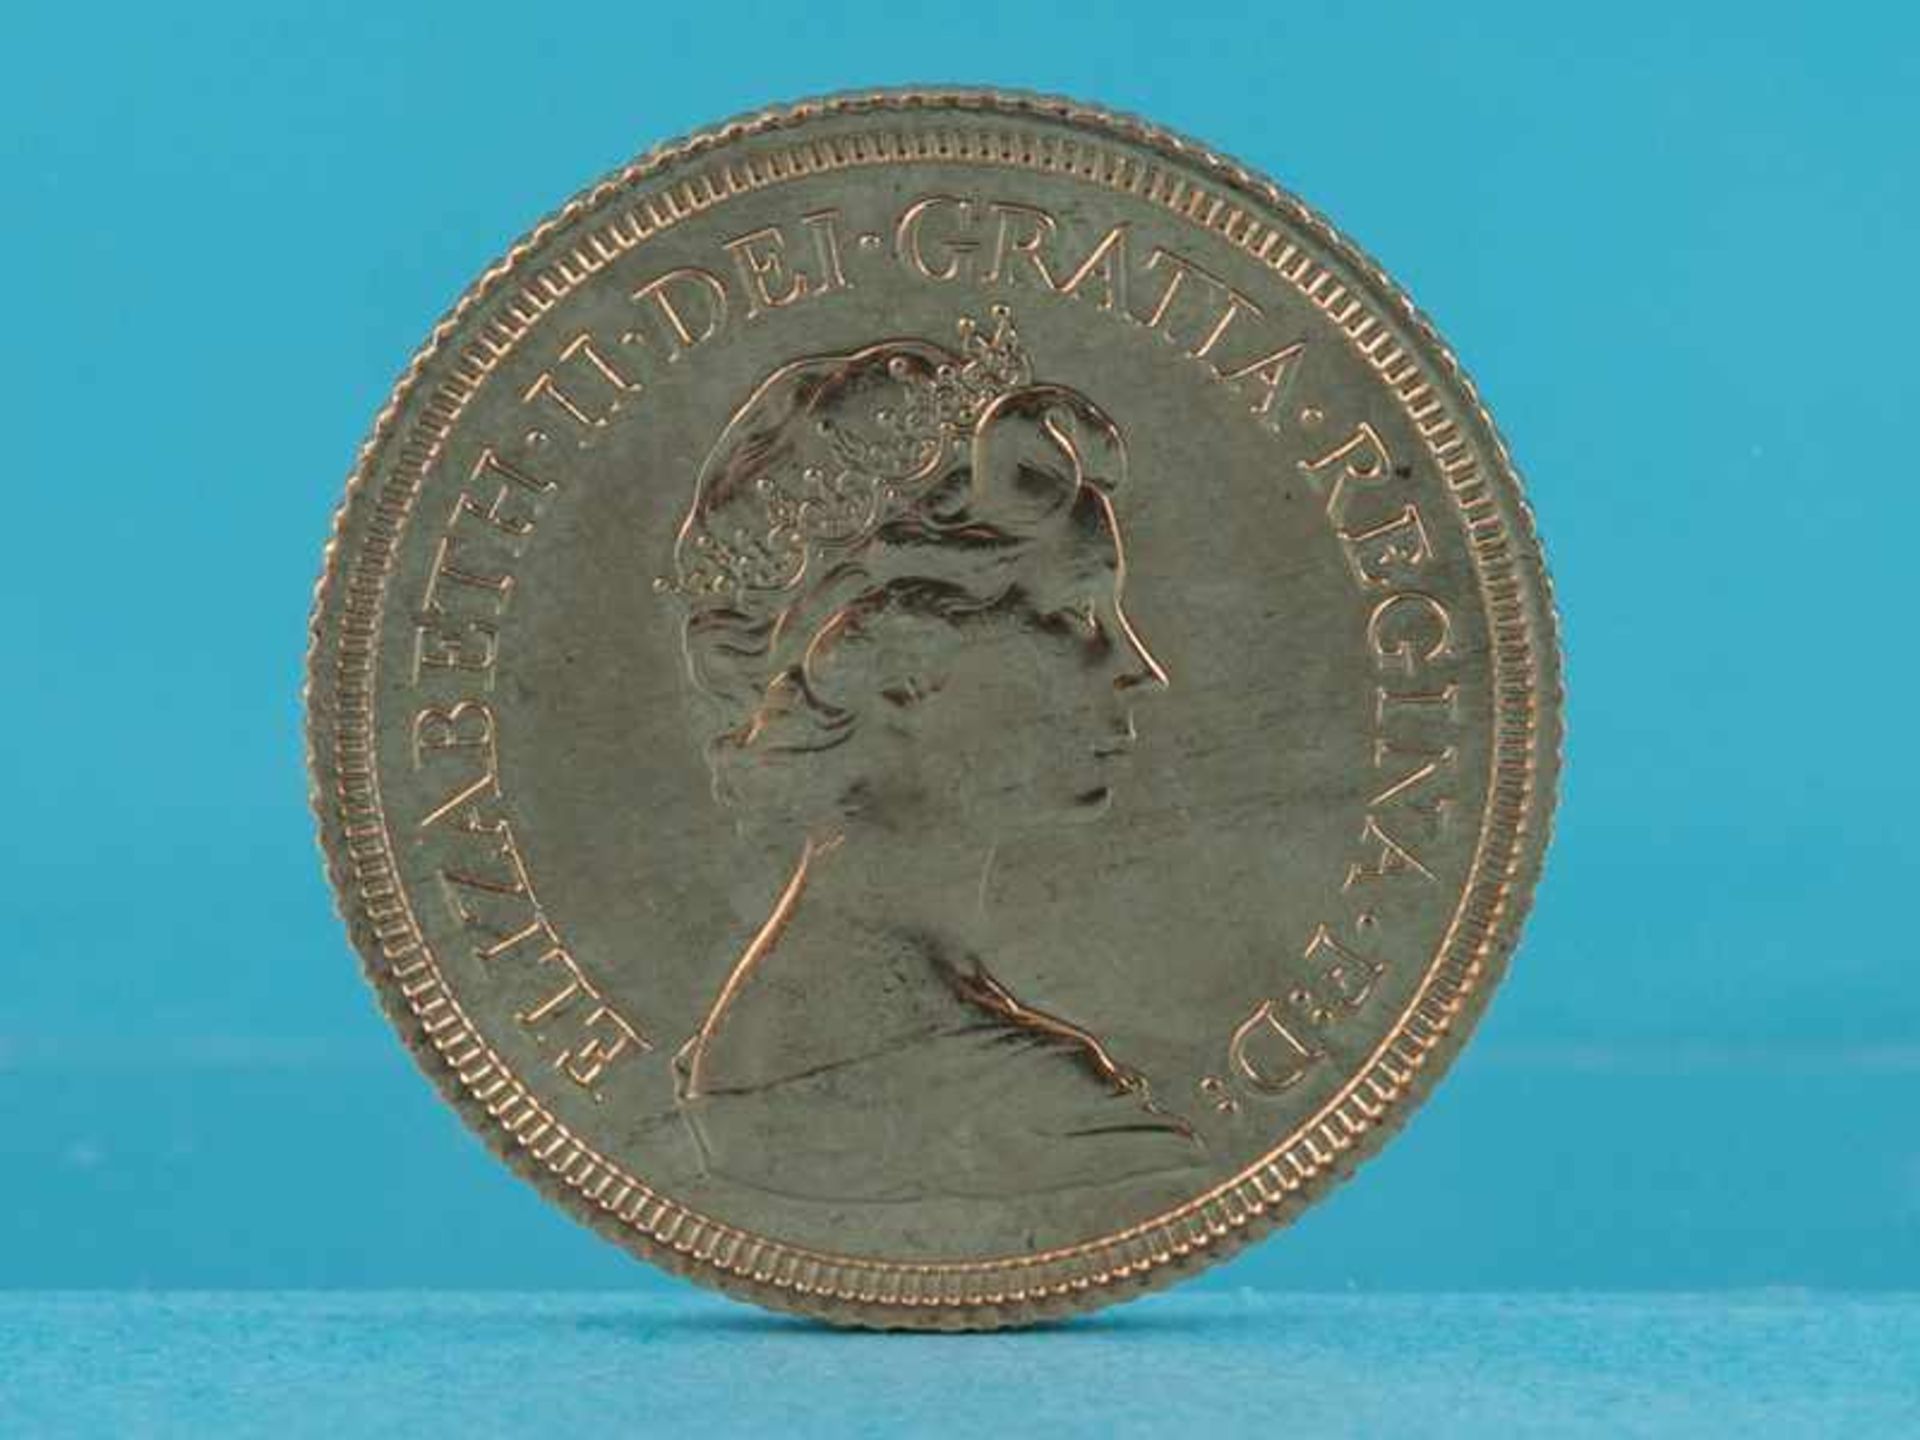 Goldmünze "1 Sovereign" (1-Pound), Großbritannien, 1976. 917/-Gold, Gewicht ca. 7,98 g (